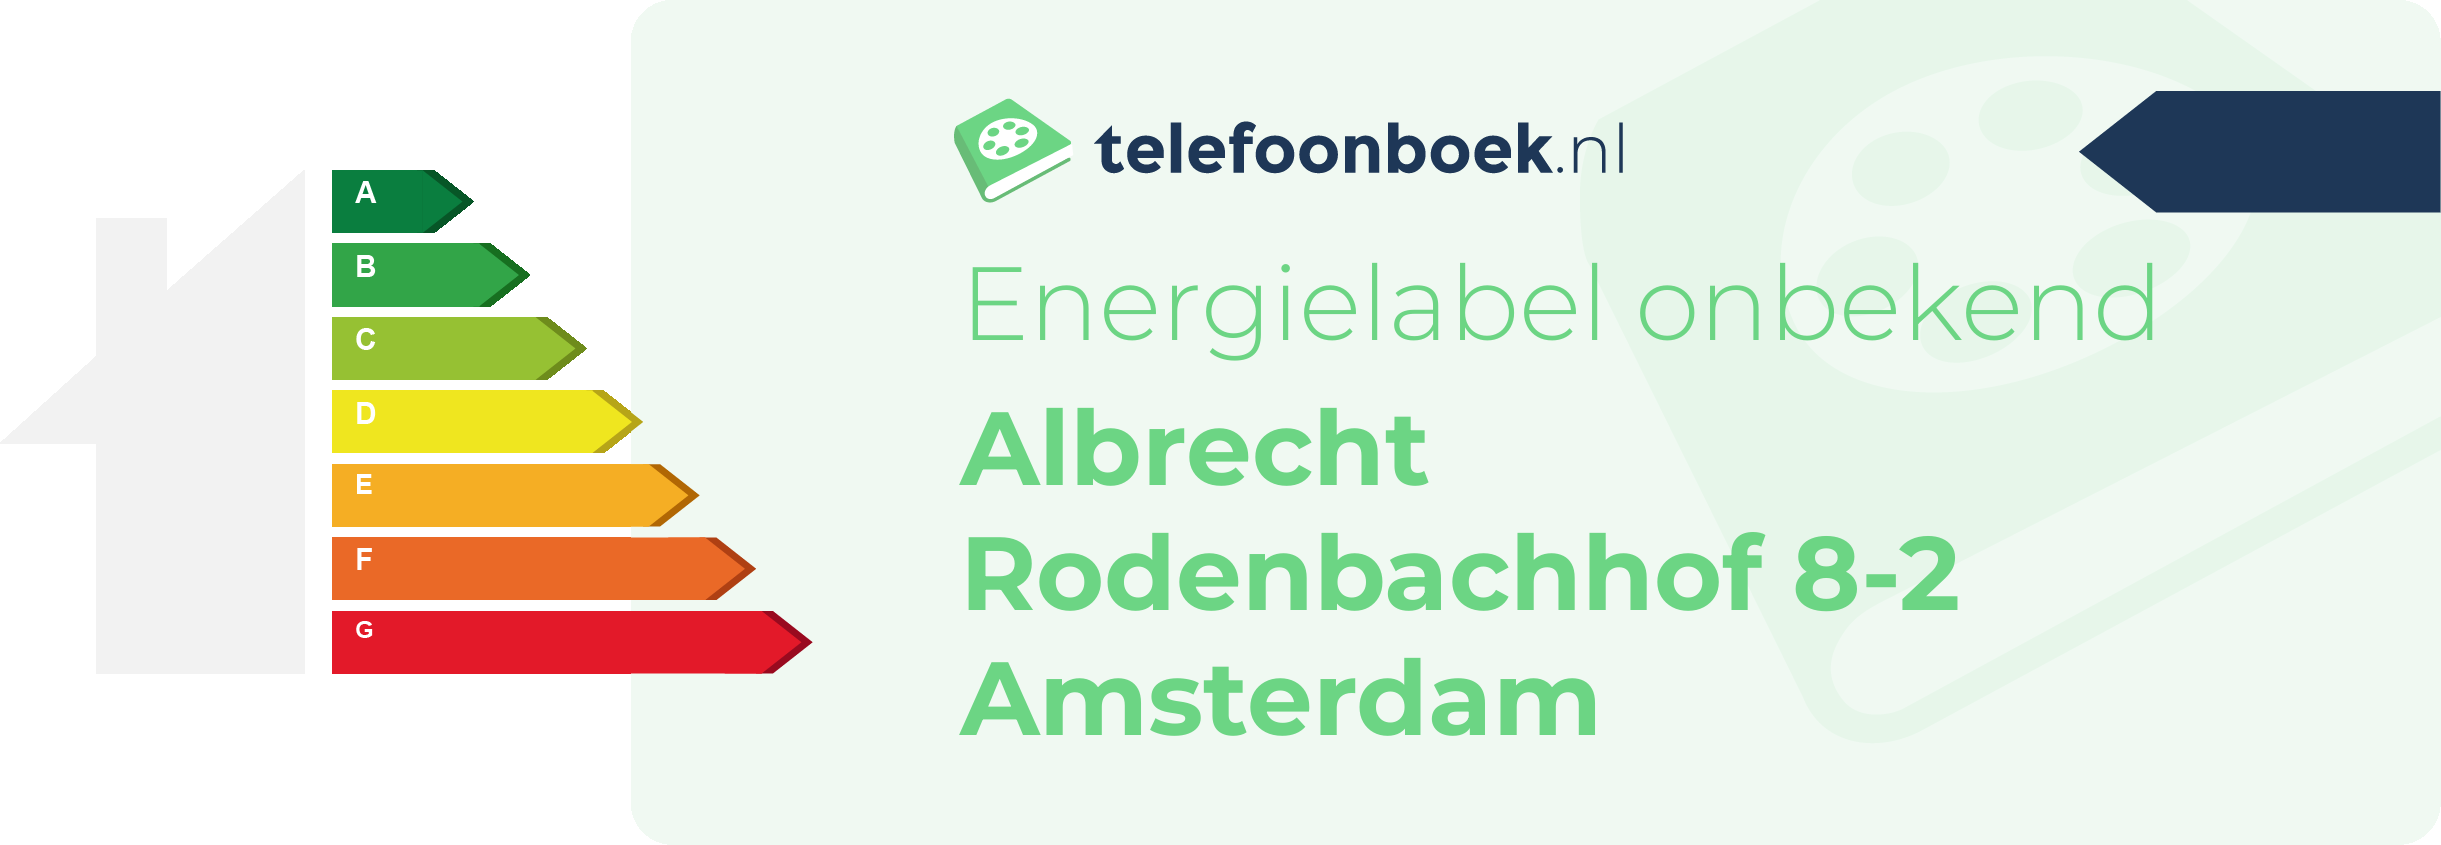 Energielabel Albrecht Rodenbachhof 8-2 Amsterdam